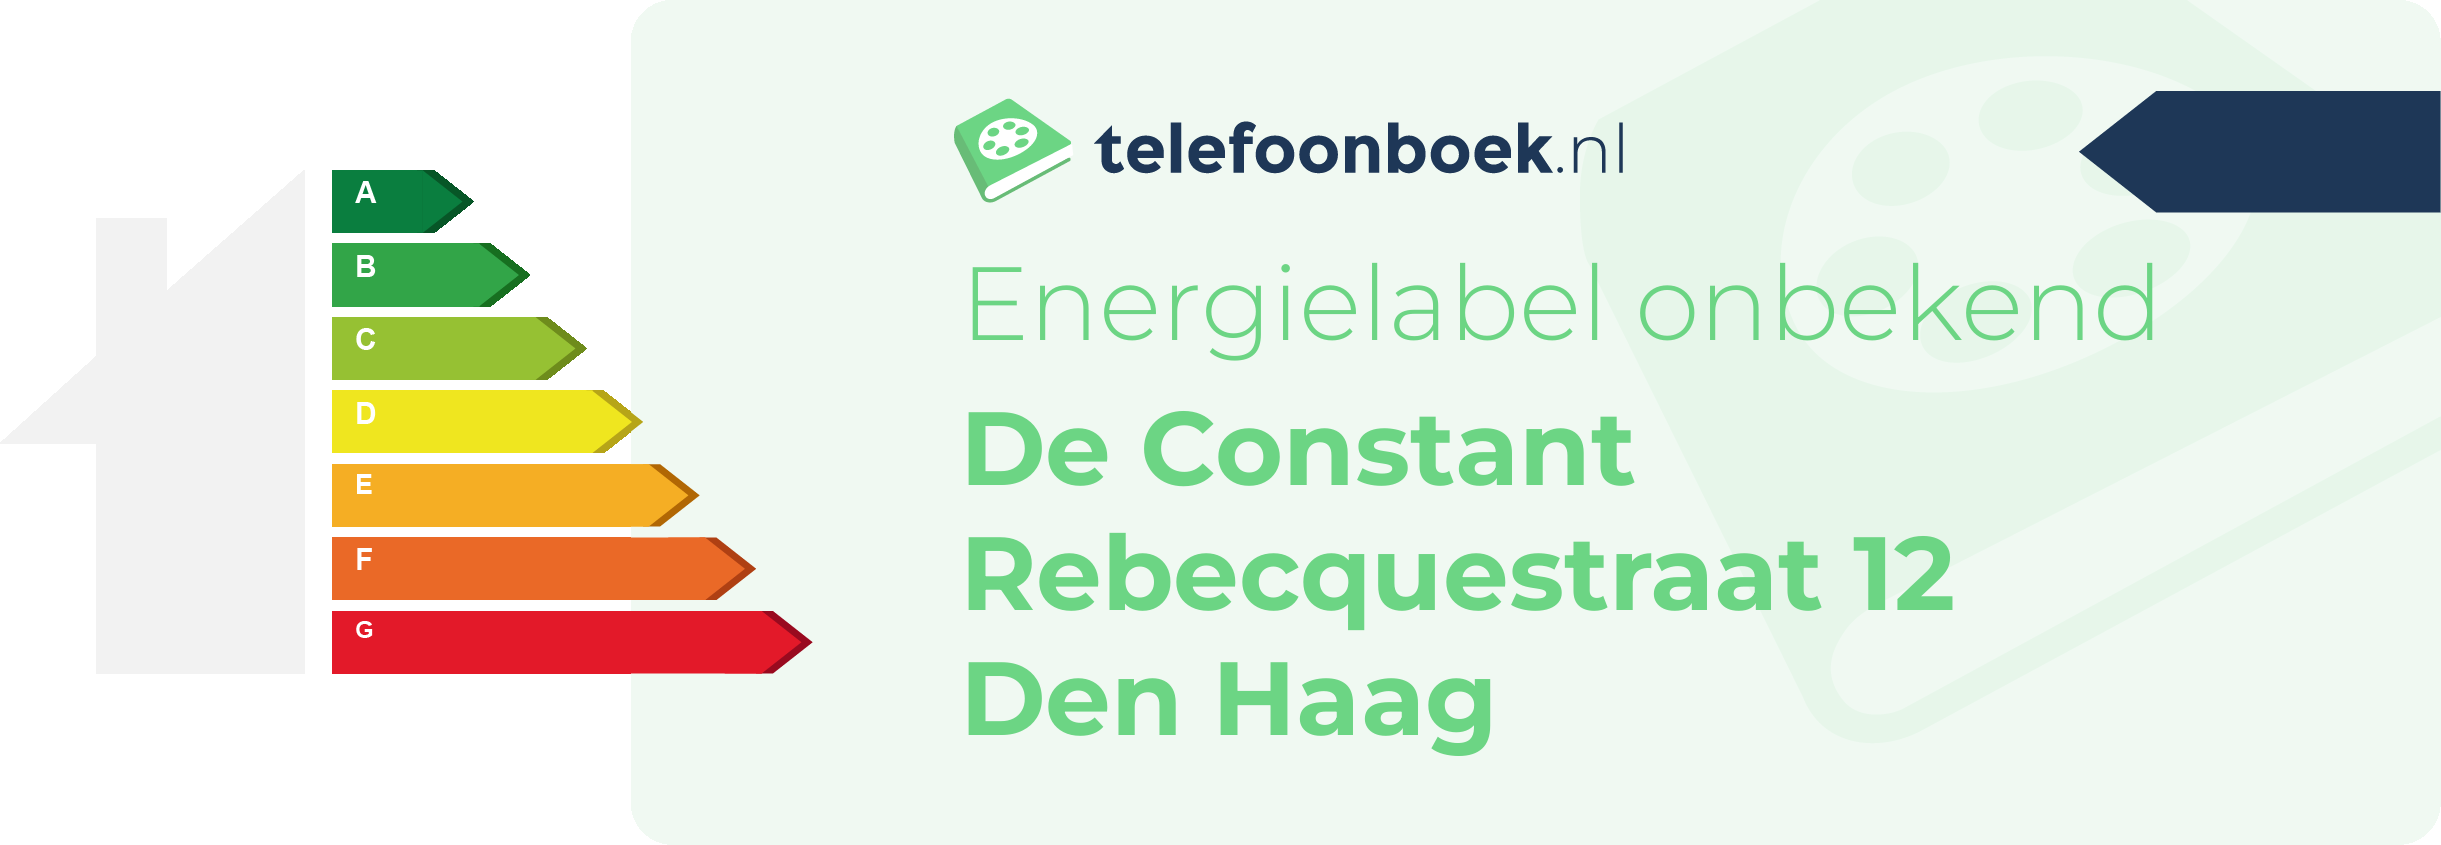 Energielabel De Constant Rebecquestraat 12 Den Haag